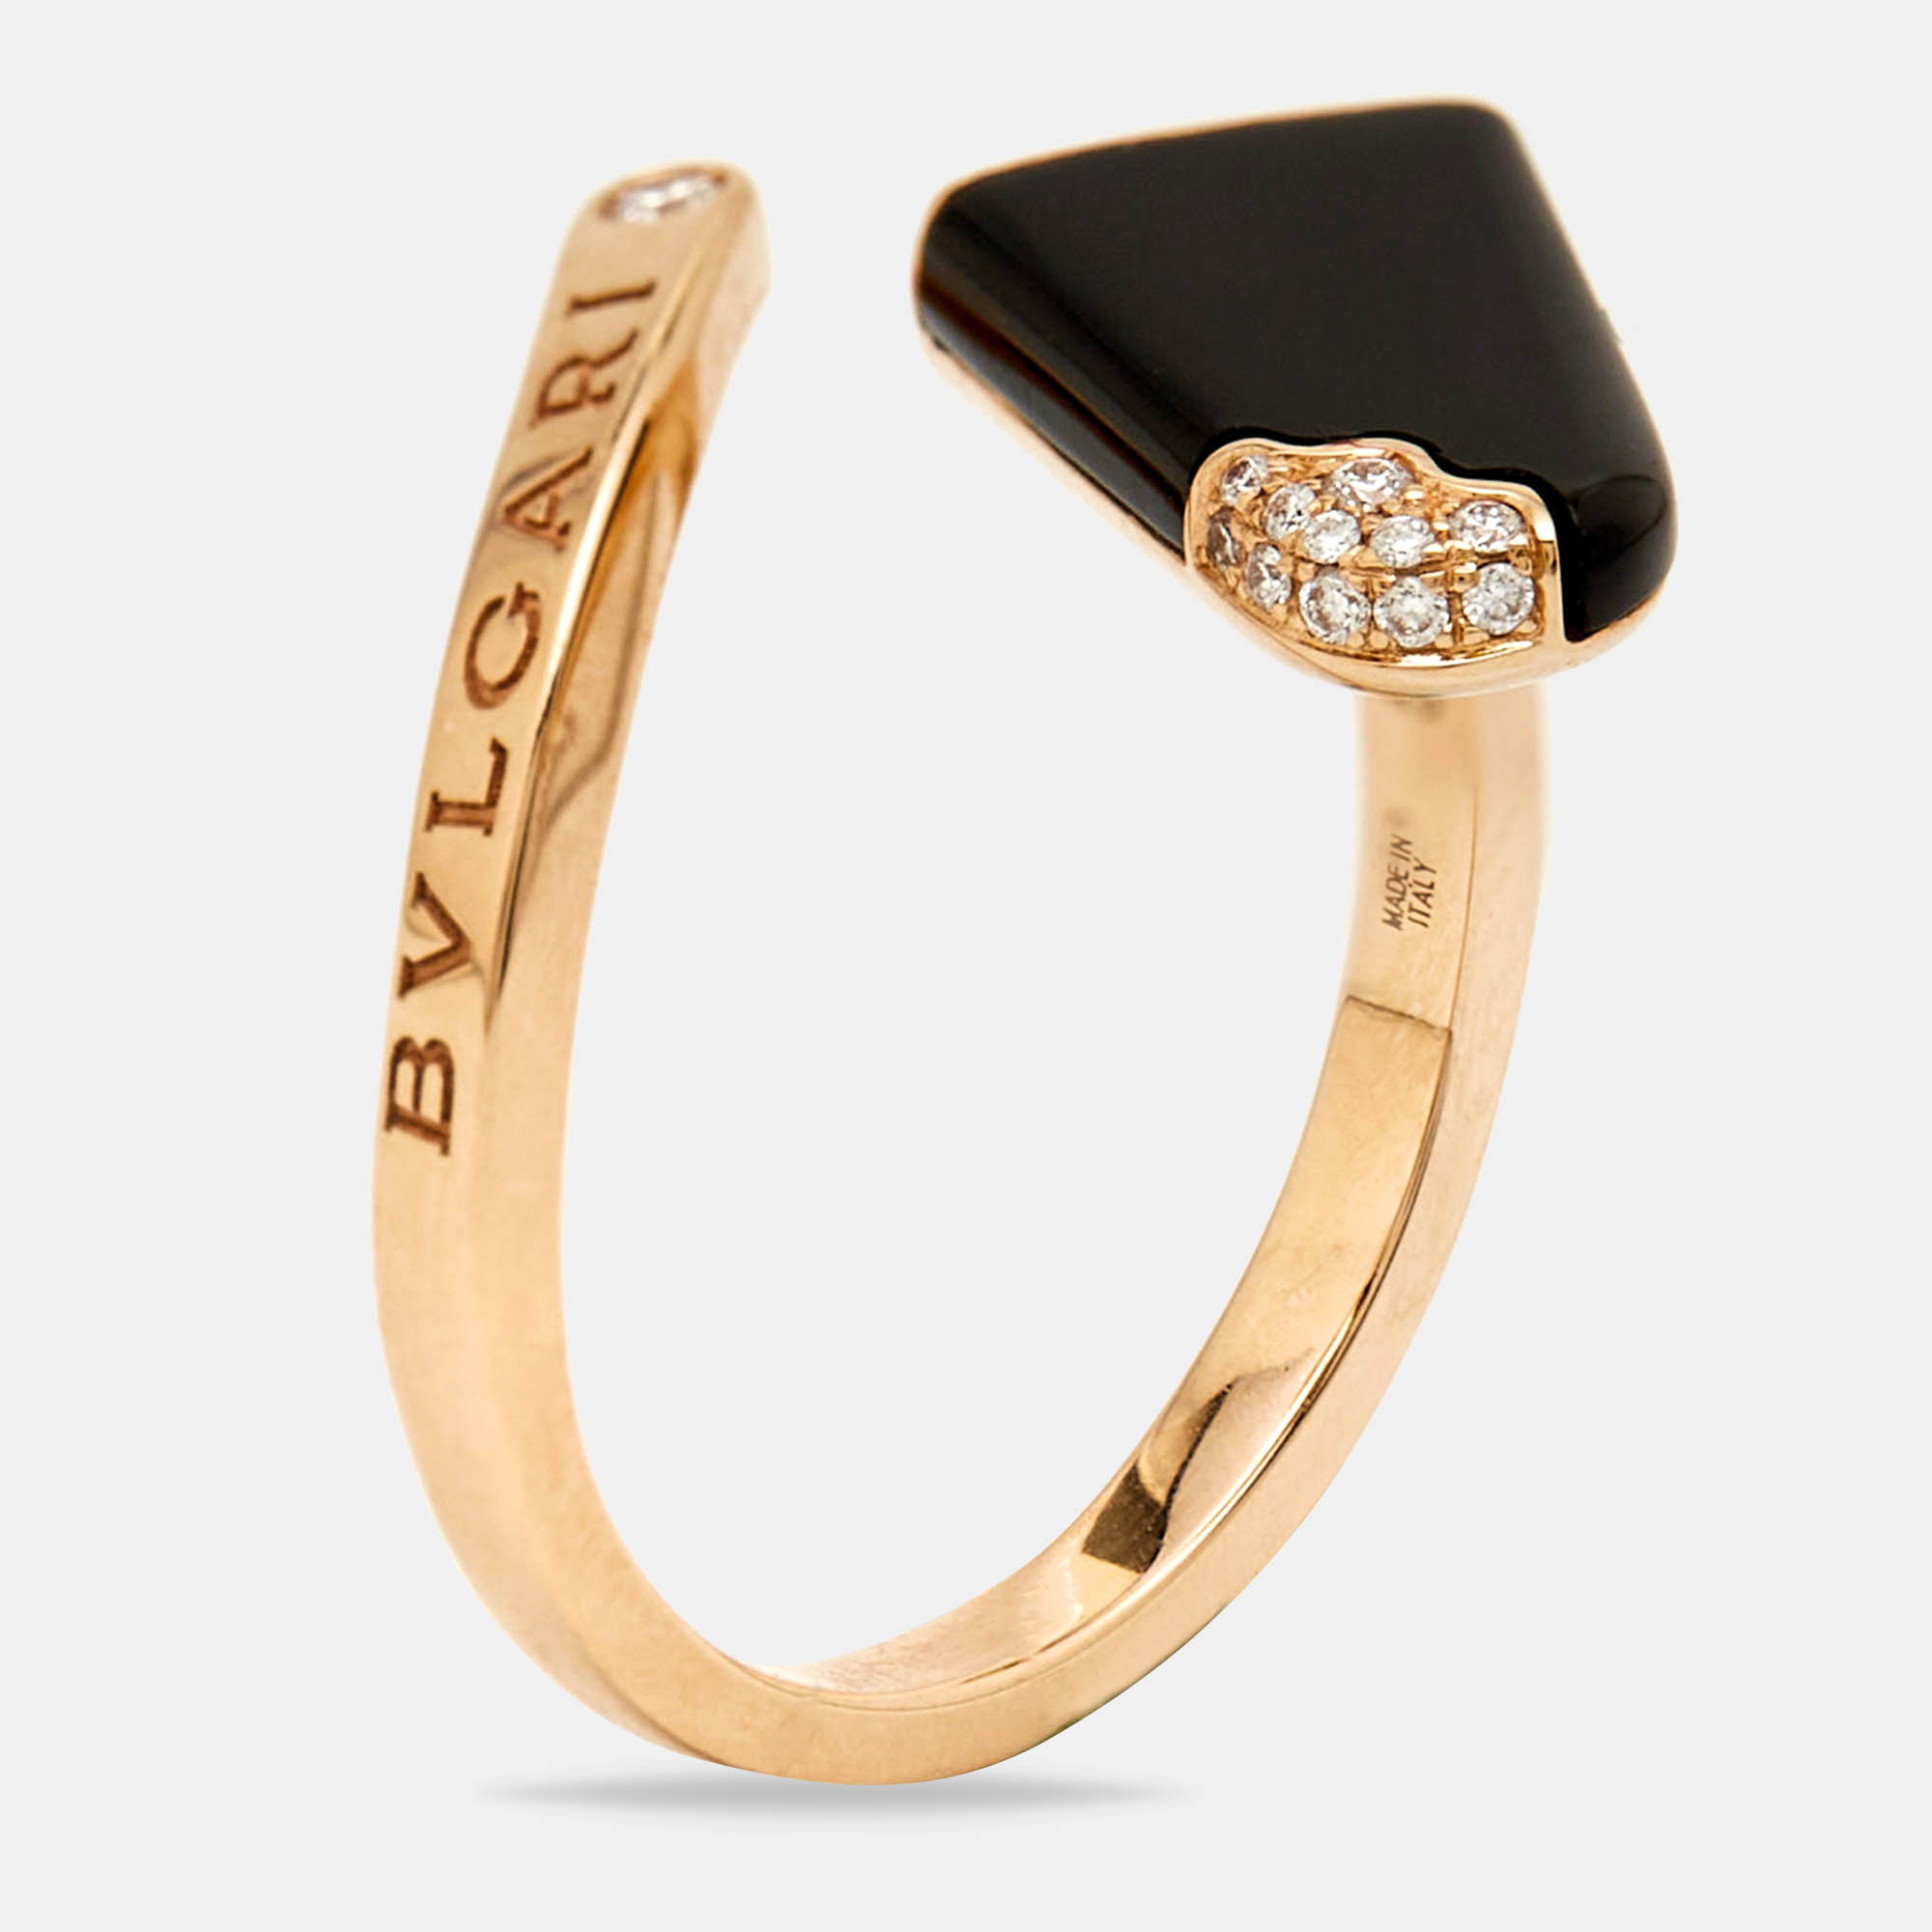 Bvlgari gelati onyx diamond 18k rose gold ring size 56